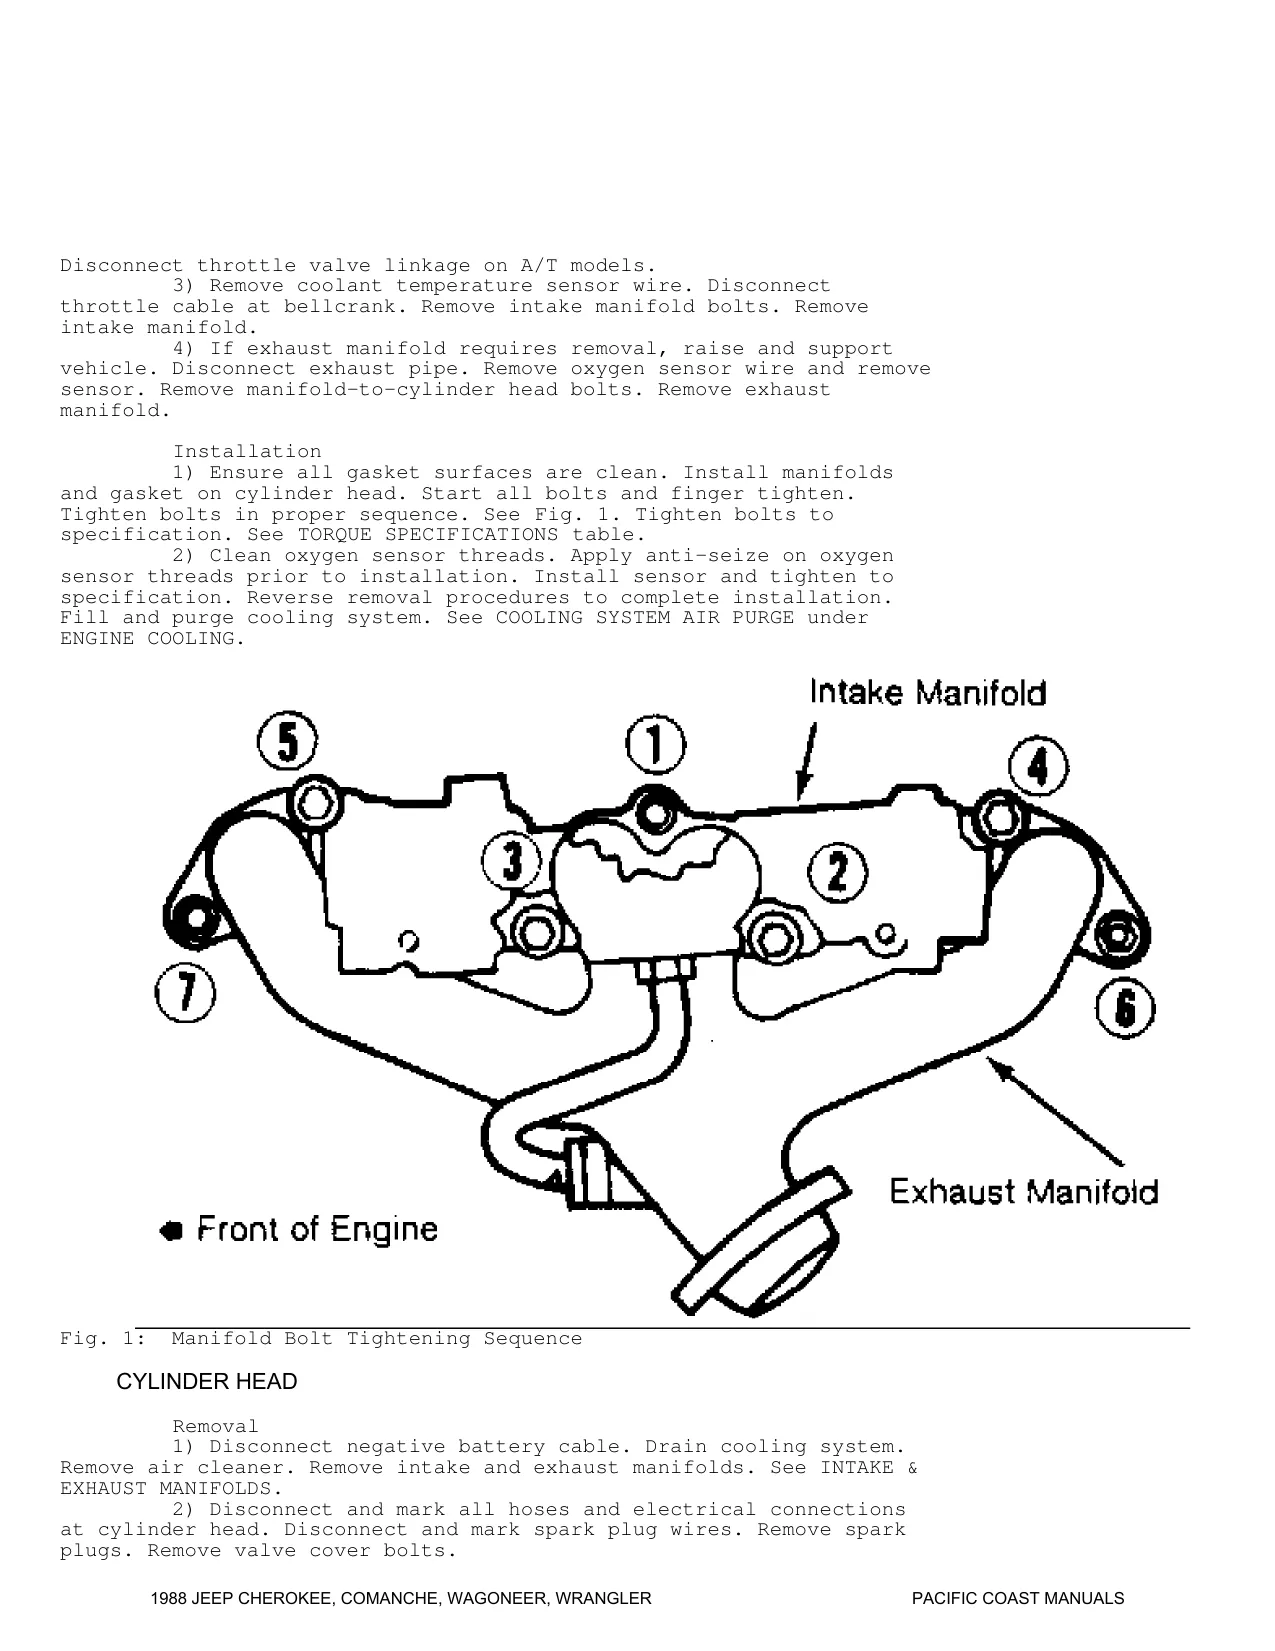 1988 Jeep Cherokee repair manual Preview image 4